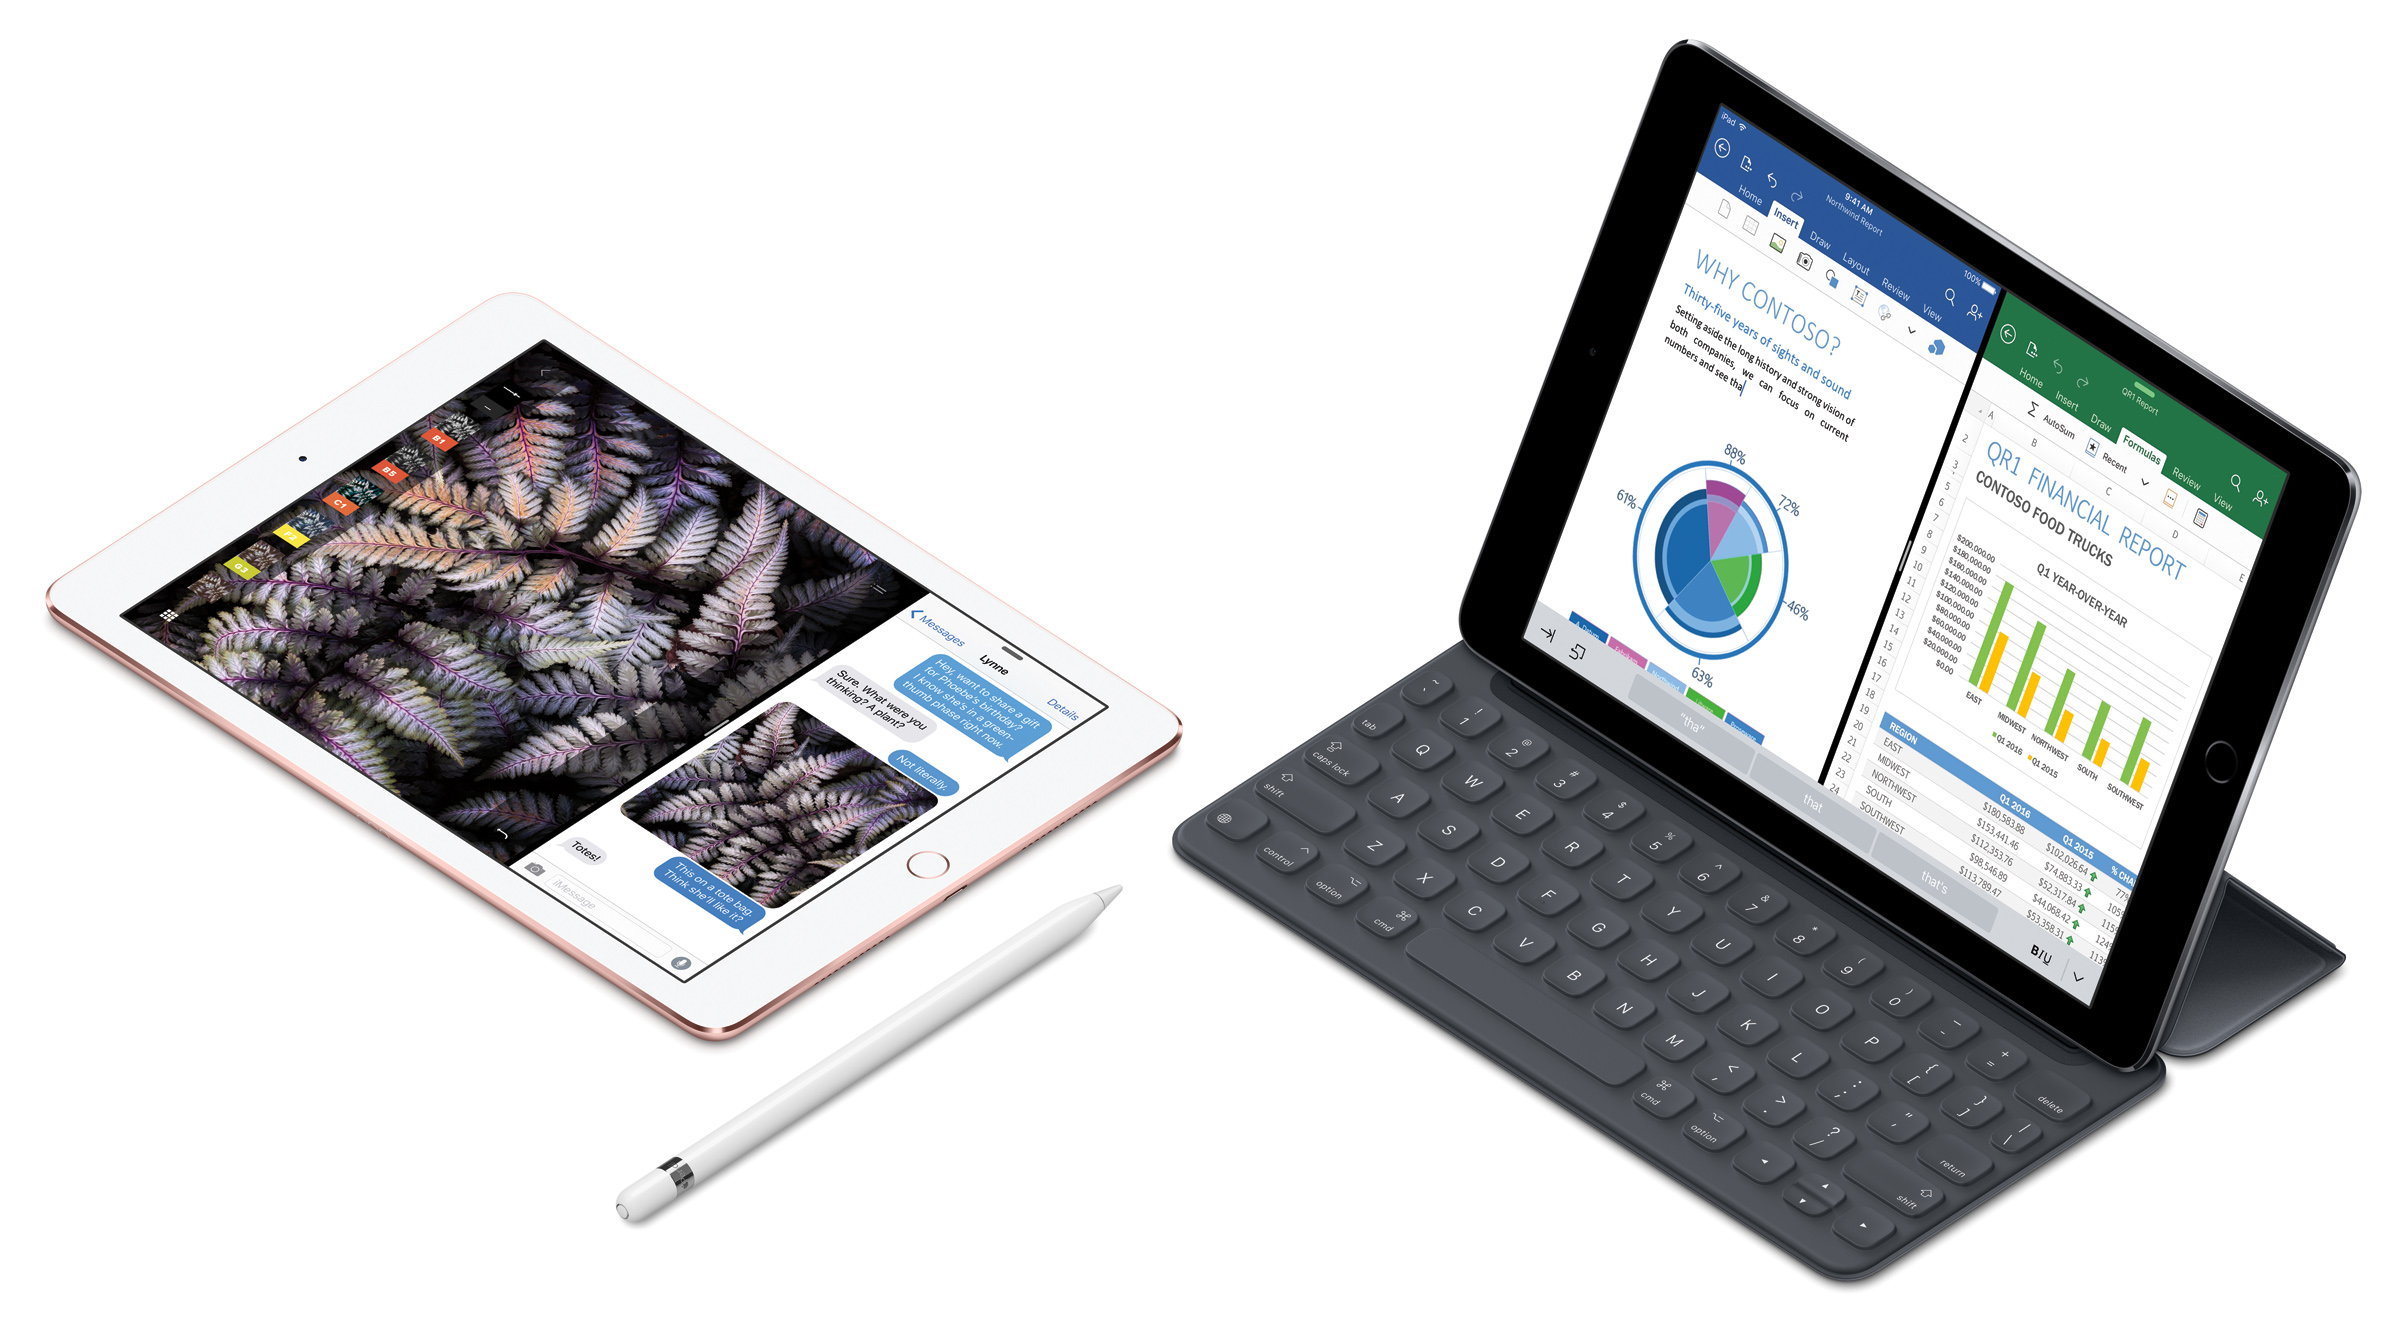 アップル、9.7インチ「iPad Pro」の販売を開始。価格は64,800円〜